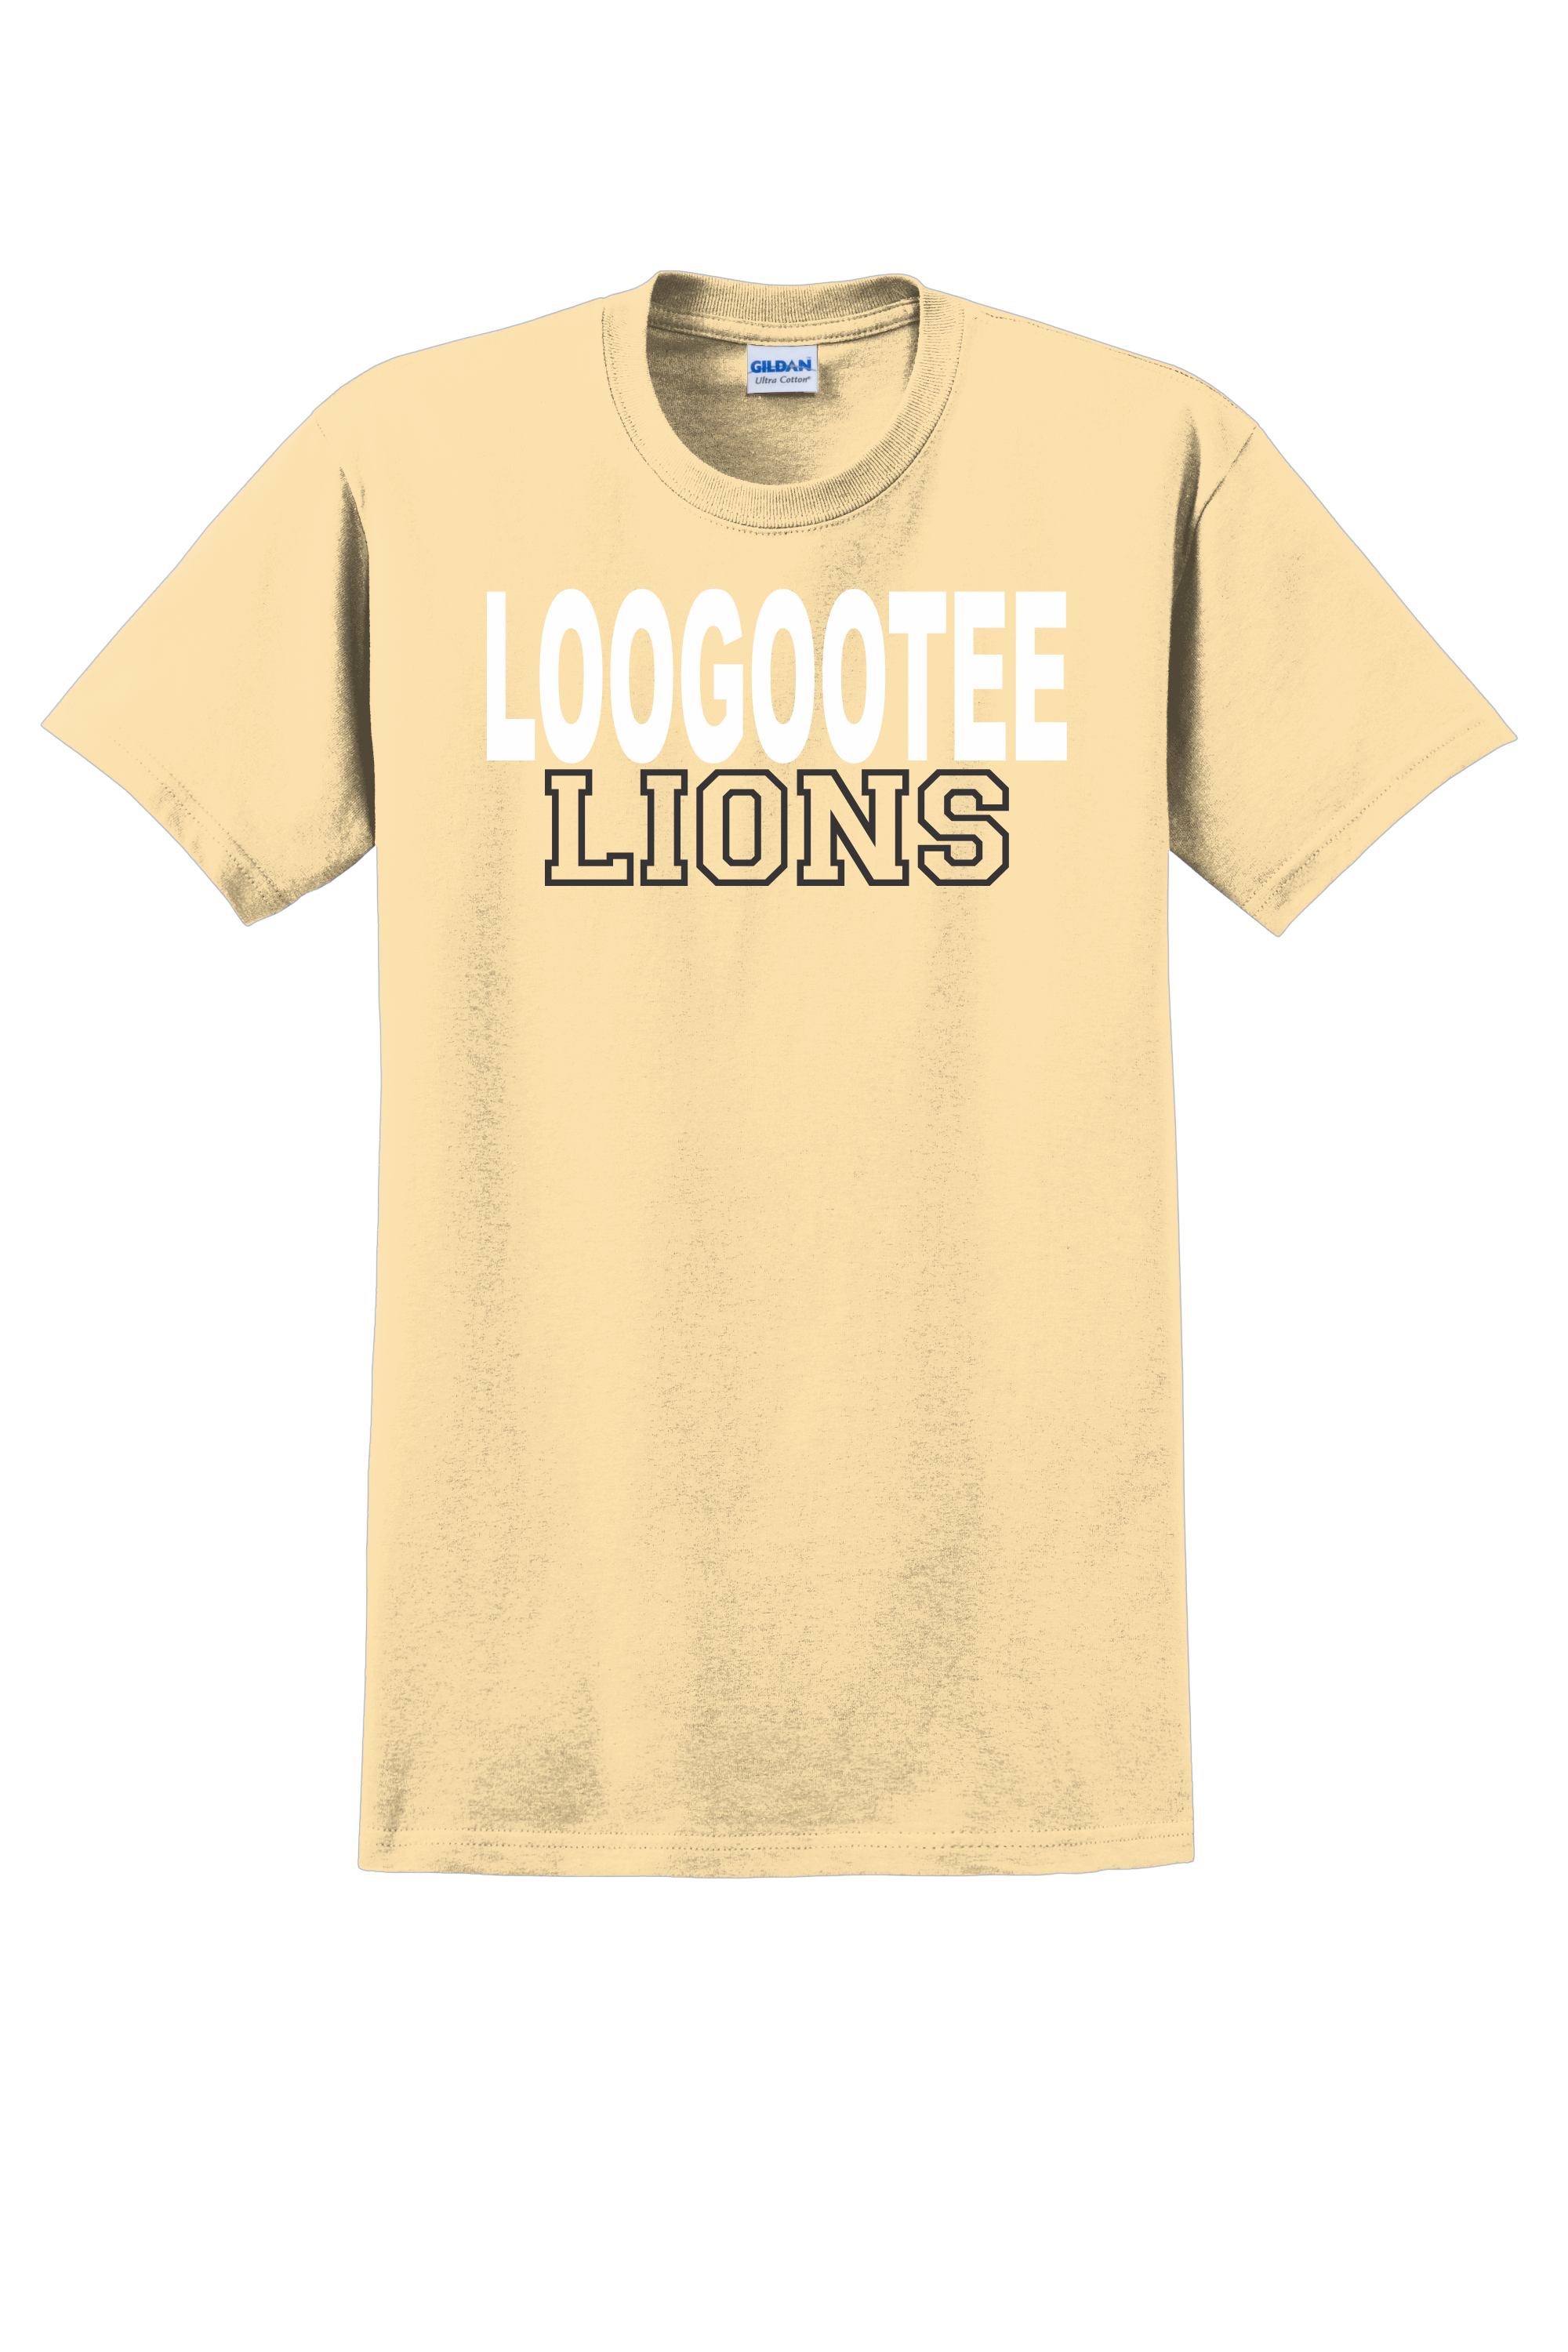 Loogootee Lions Tee (Block)